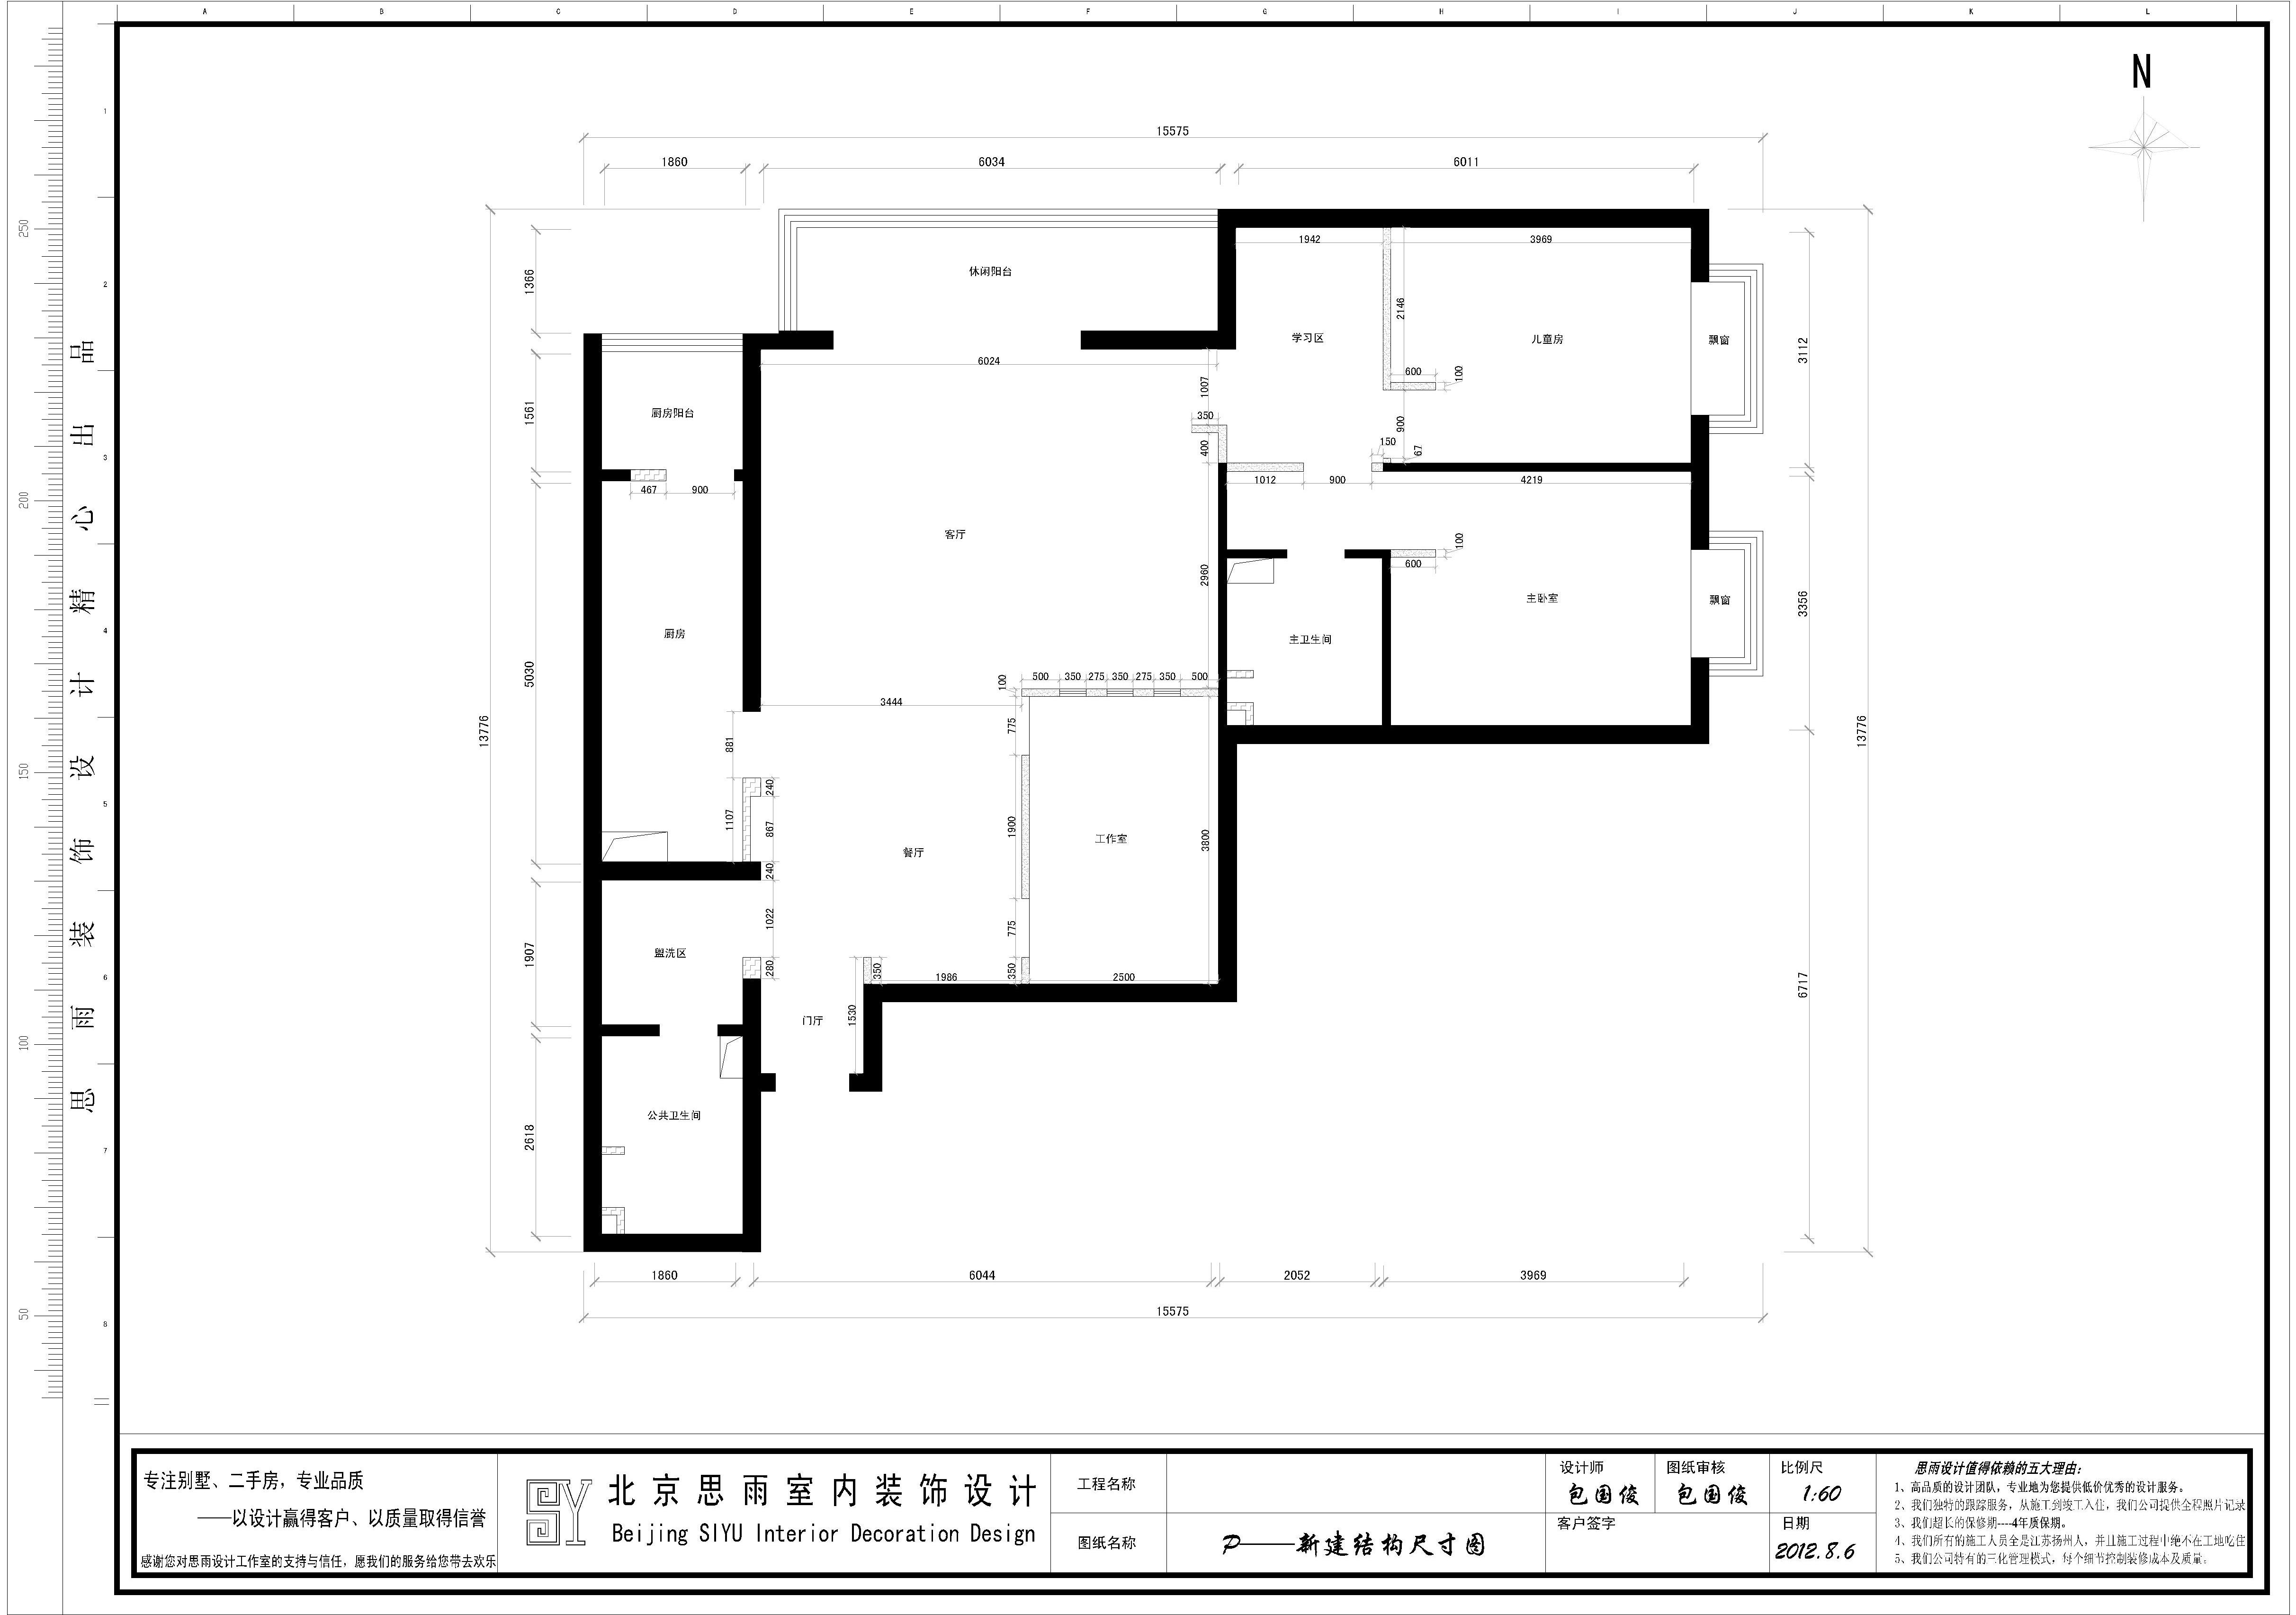 思雨易居 扬州建筑 扬州逅屋 逅屋设计 北京二手房 户型图图片来自思雨易居设计-包国俊在《时髦空间》设计方案汇报的分享